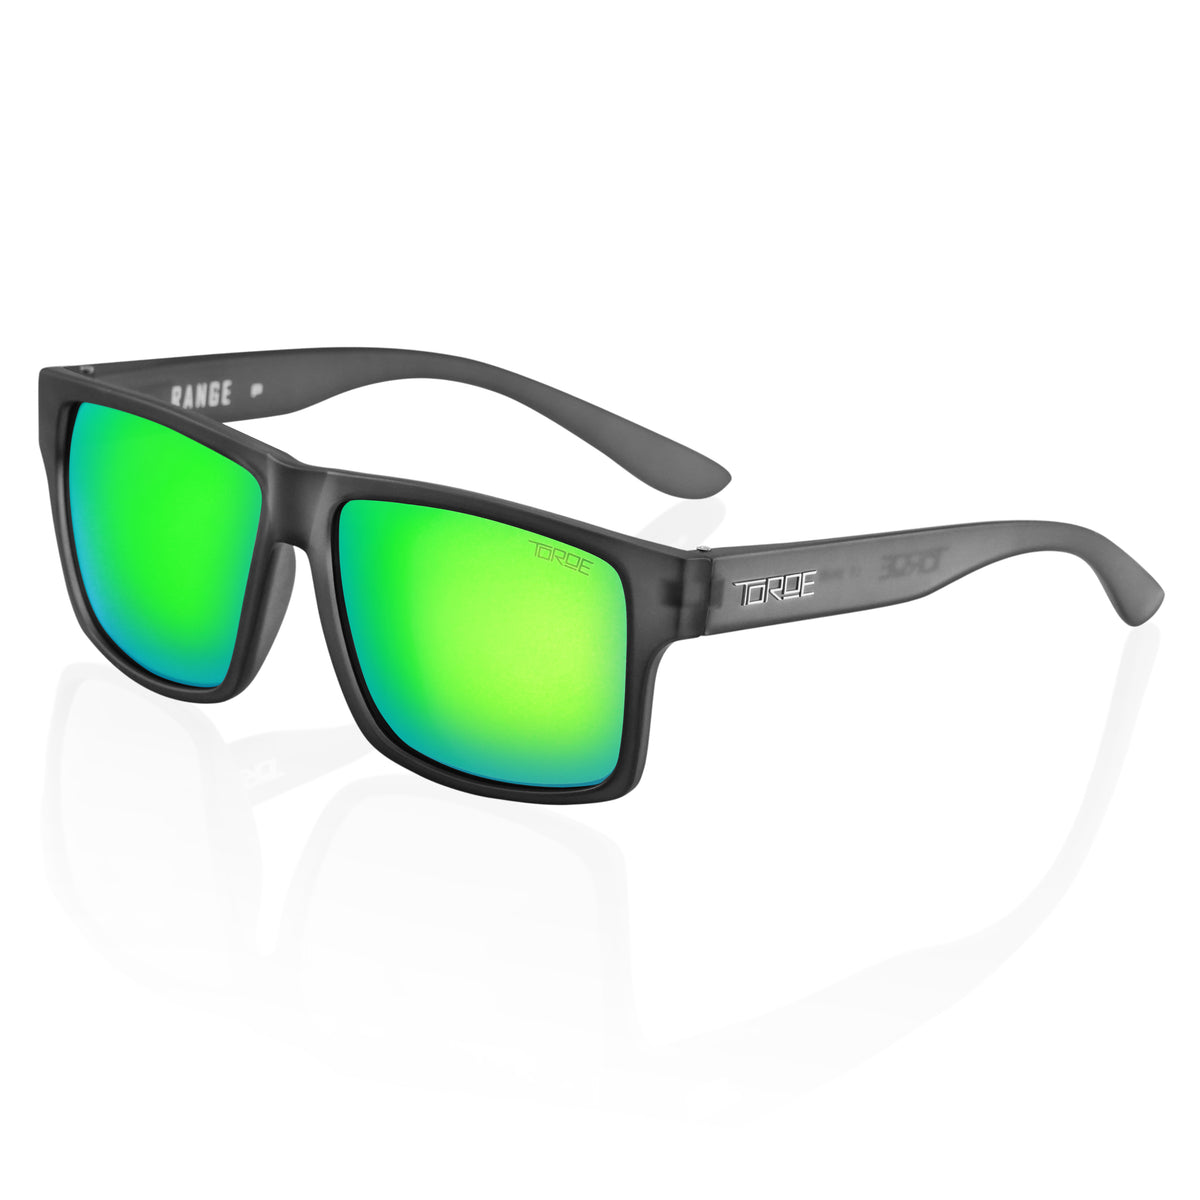 Toroe Lifetime \'RANGE\' Eyewear with Sunglasses – EXCLUSIVE Performance Polarized TOROE Warranty